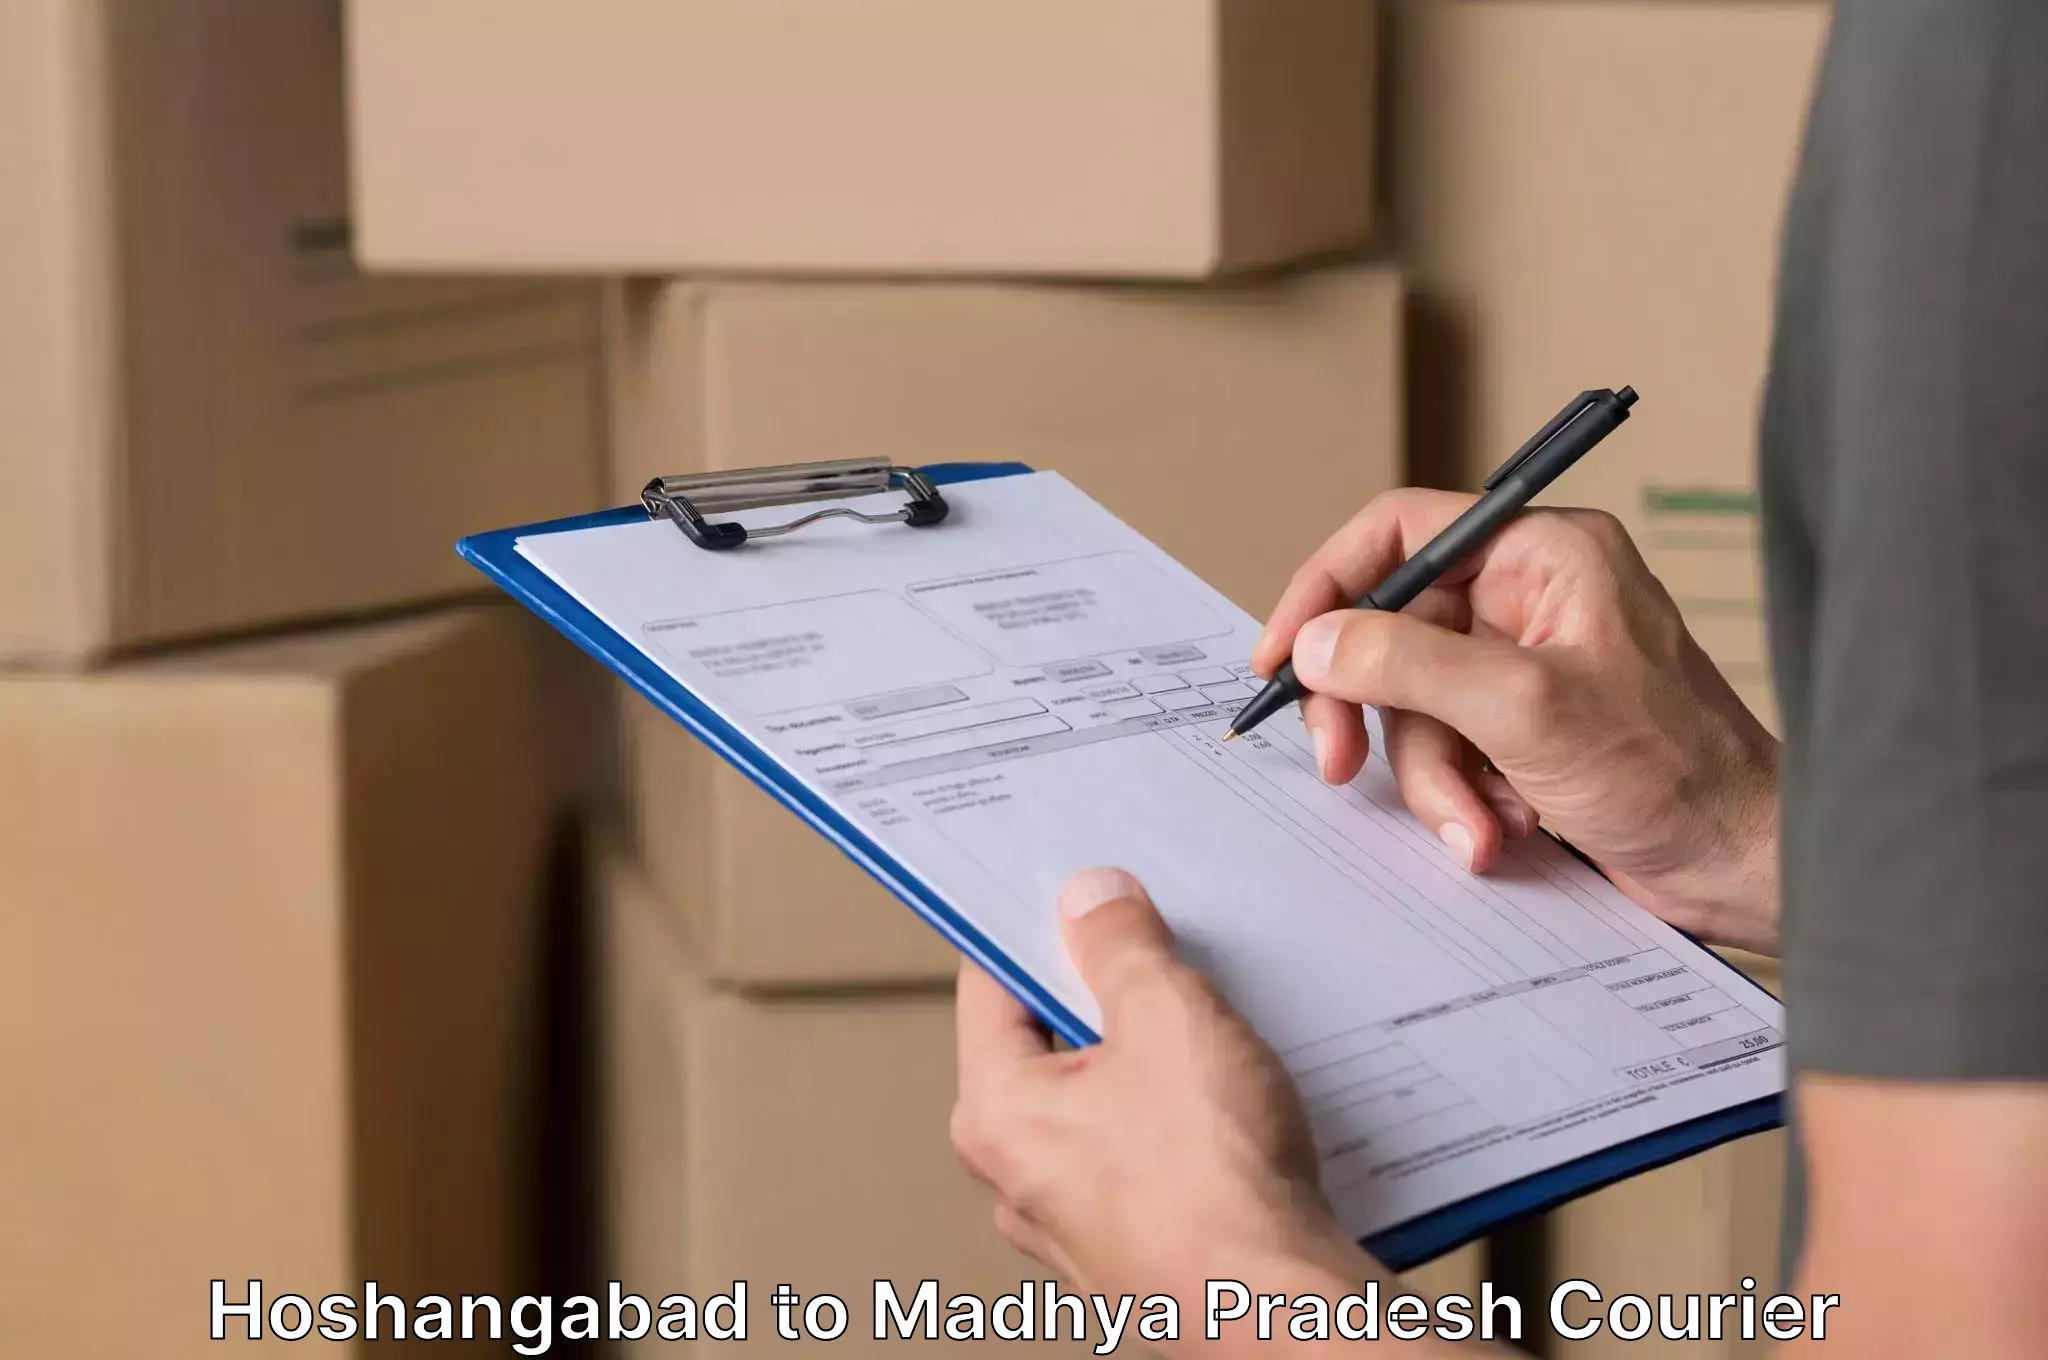 Residential moving experts Hoshangabad to Khajuraho